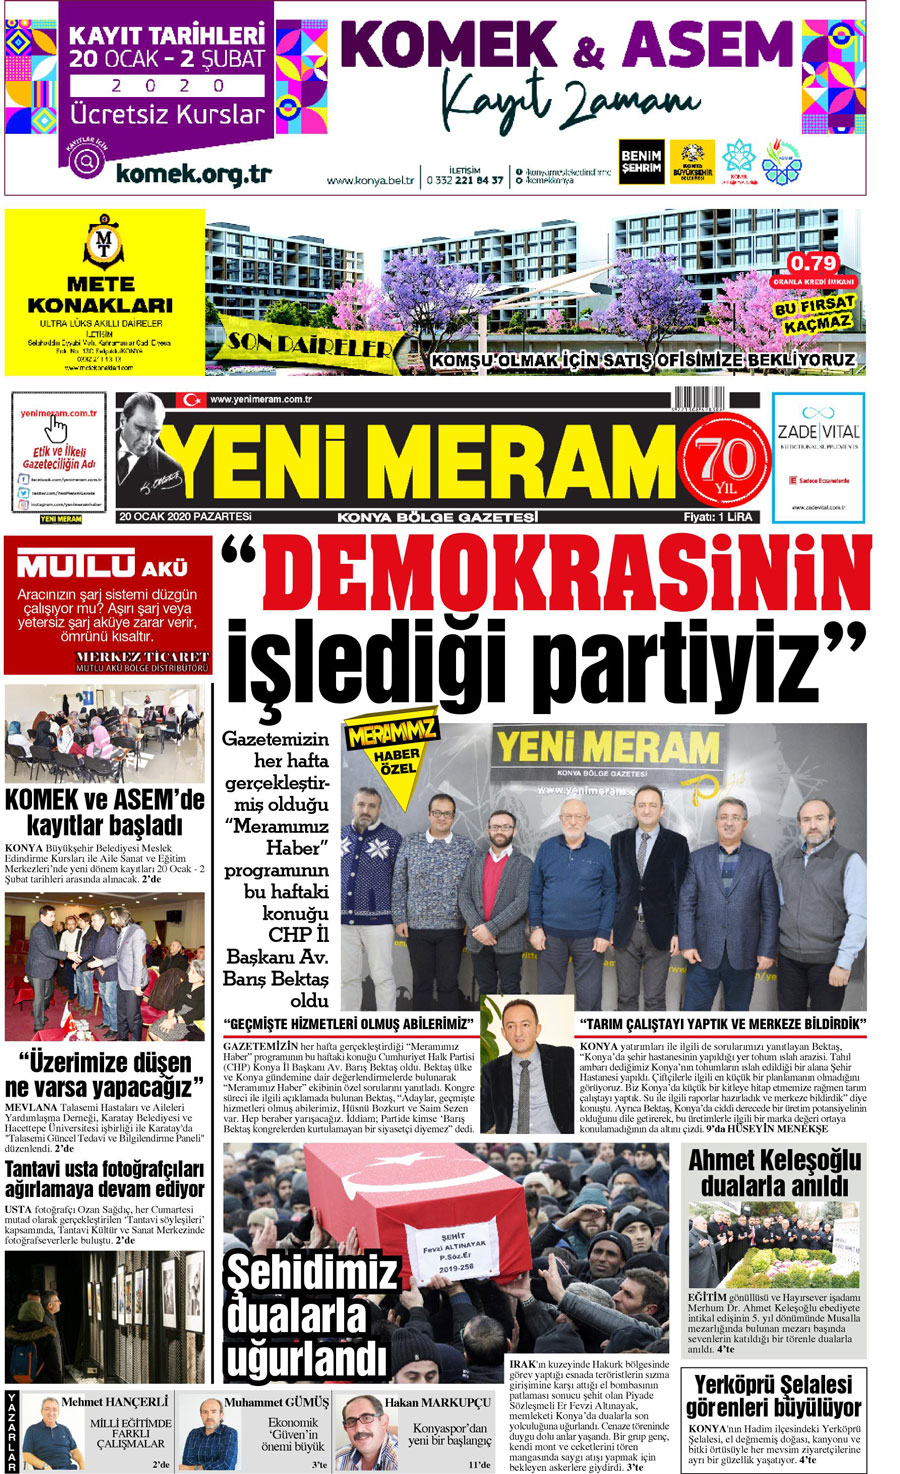 20 Ocak 2020 Yeni Meram Gazetesi